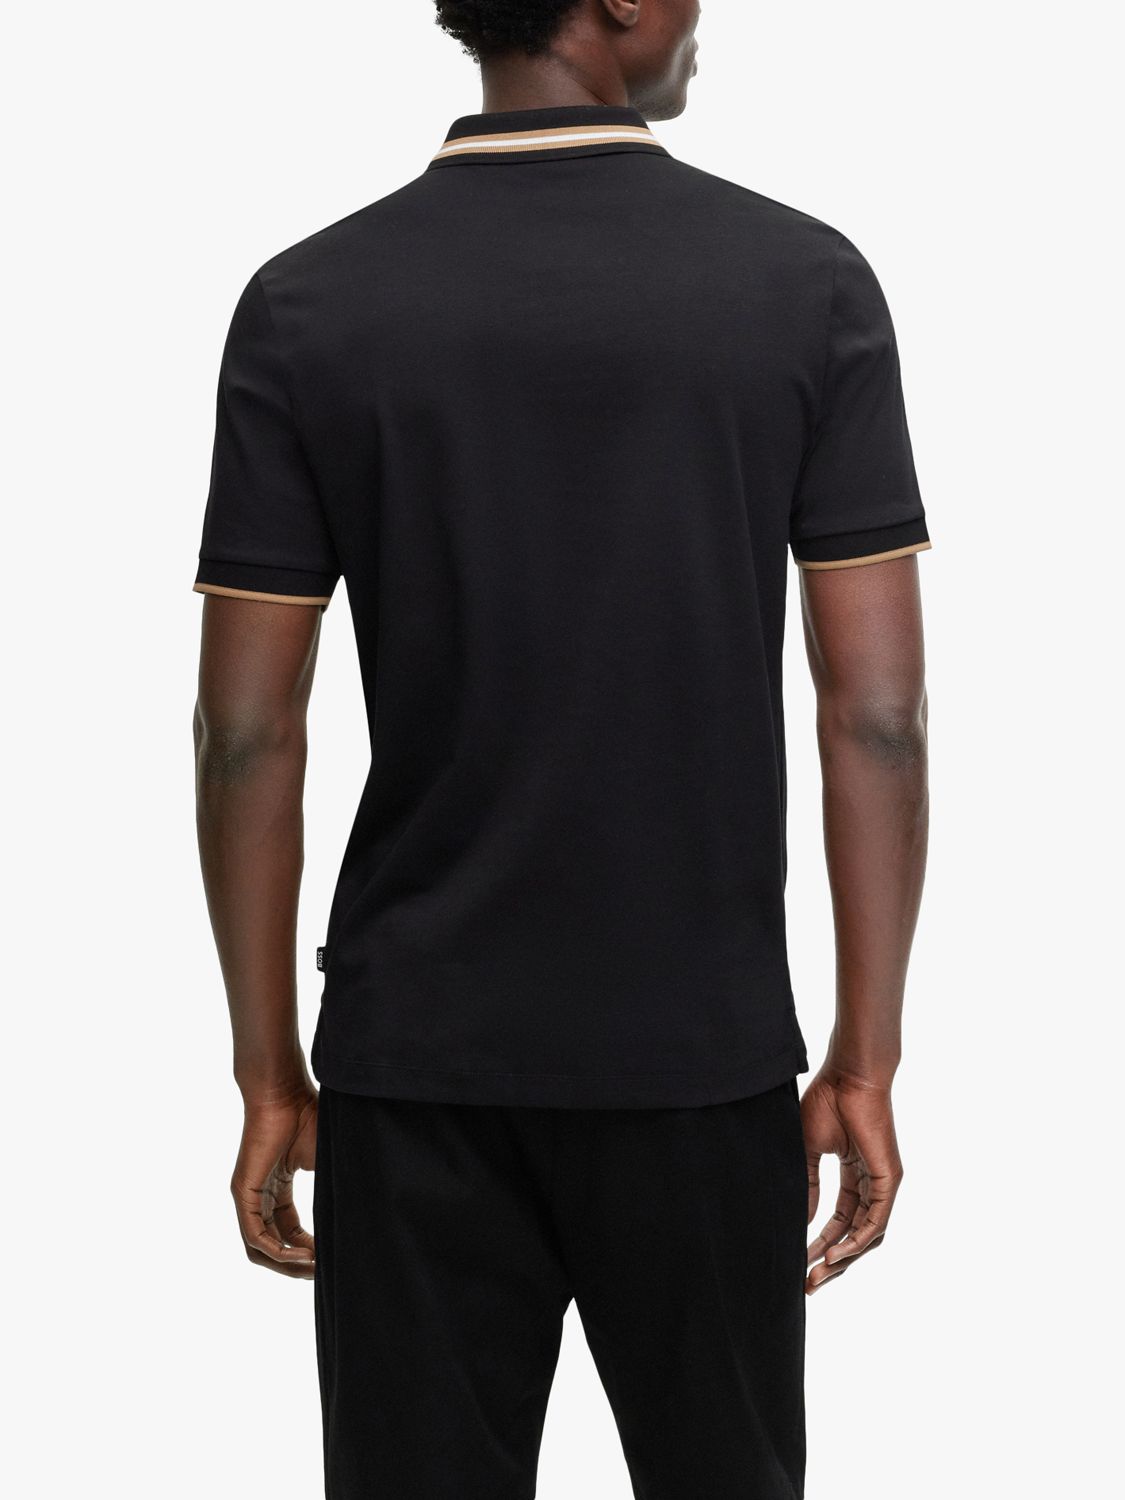 BOSS Parlay 194 Polo Shirt, Black at John Lewis & Partners